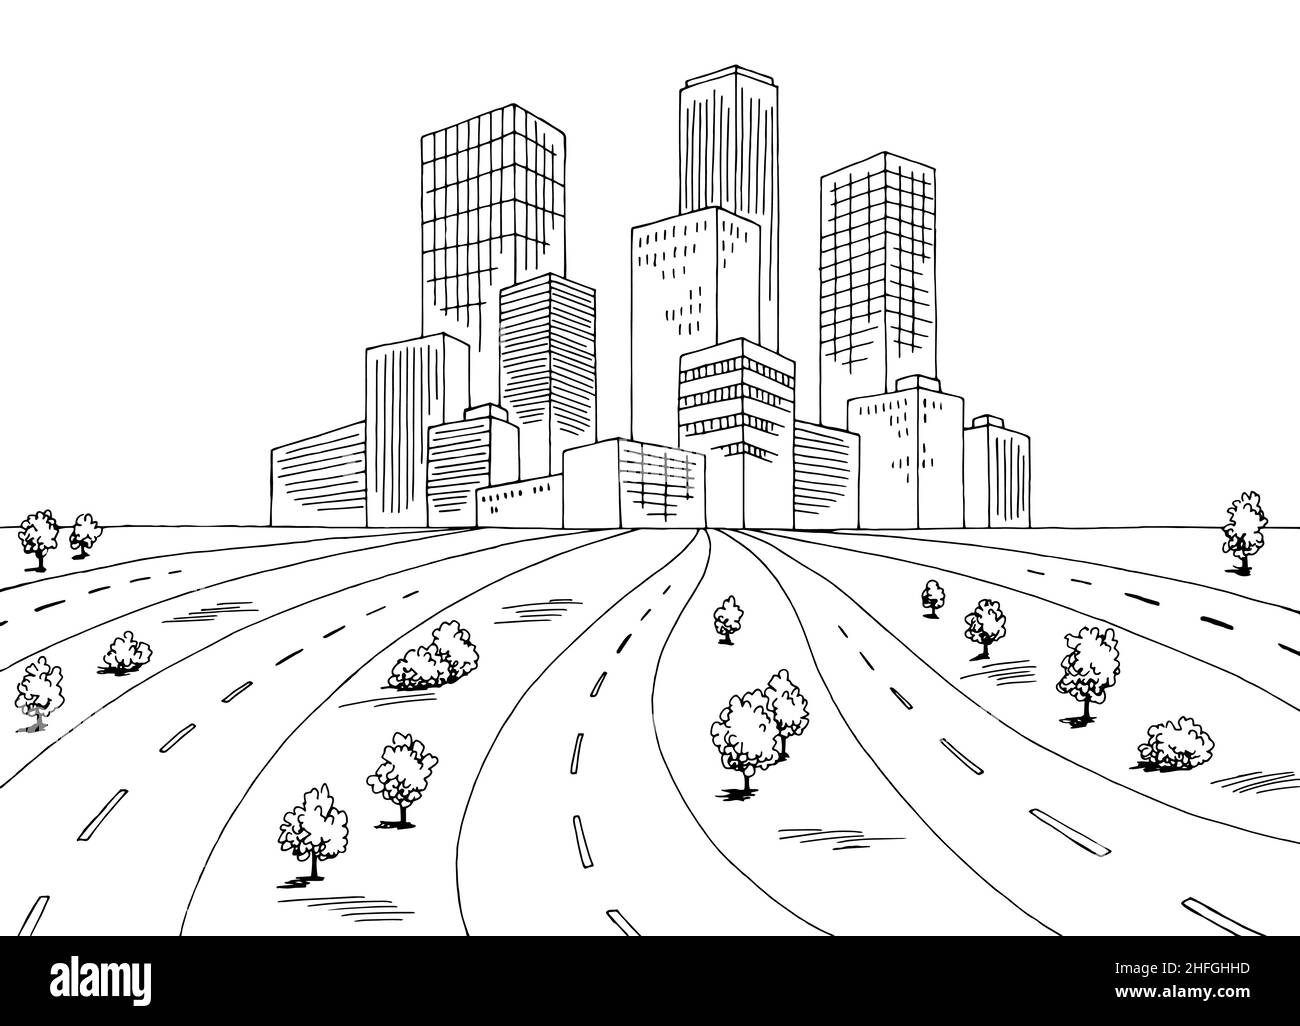 Viele Straßen in die Stadt Grafik schwarz weiß Landschaft Skizze Illustration Vektor Stock Vektor